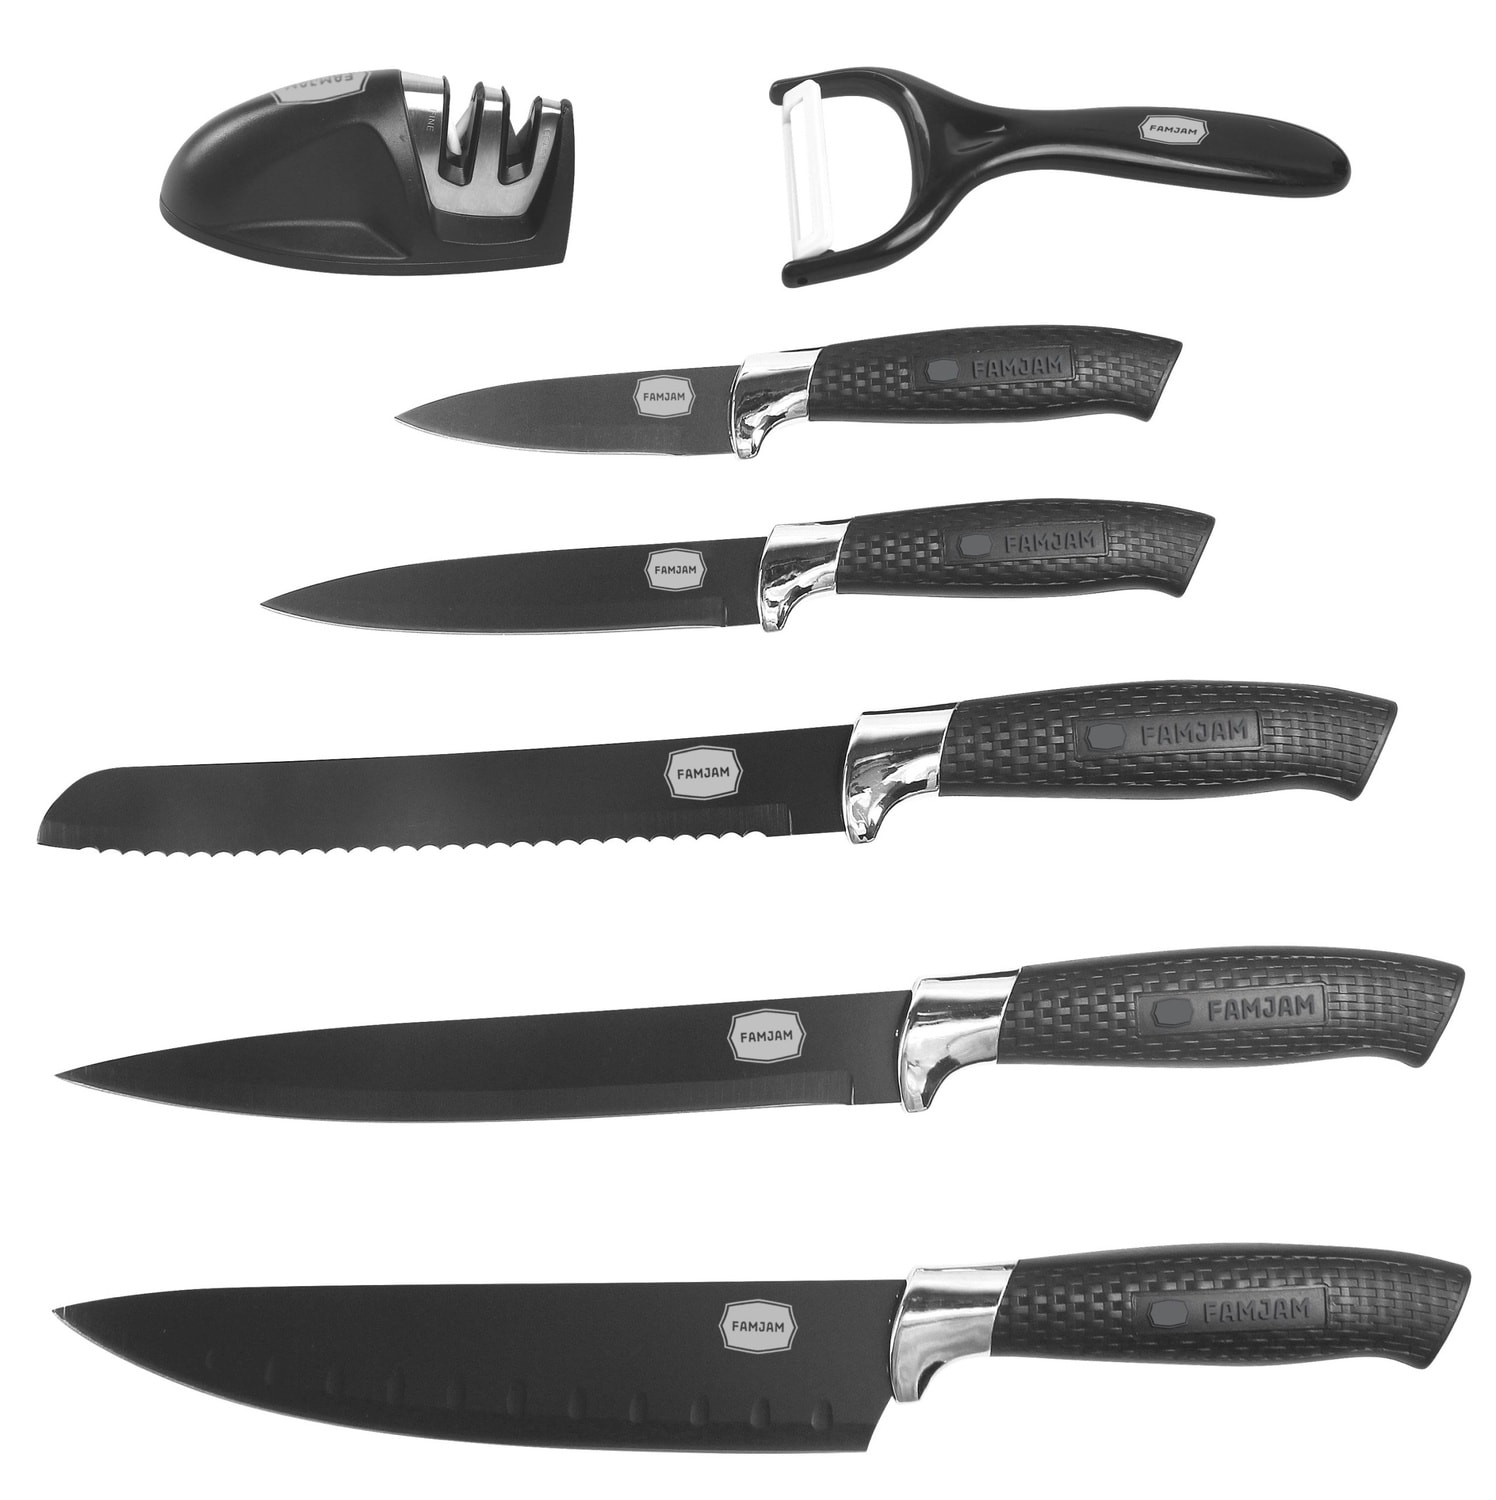 8 Delar Knivset med Ställ för Köket - Köksknivar Skalare och Knivslip Set (53 av 74)